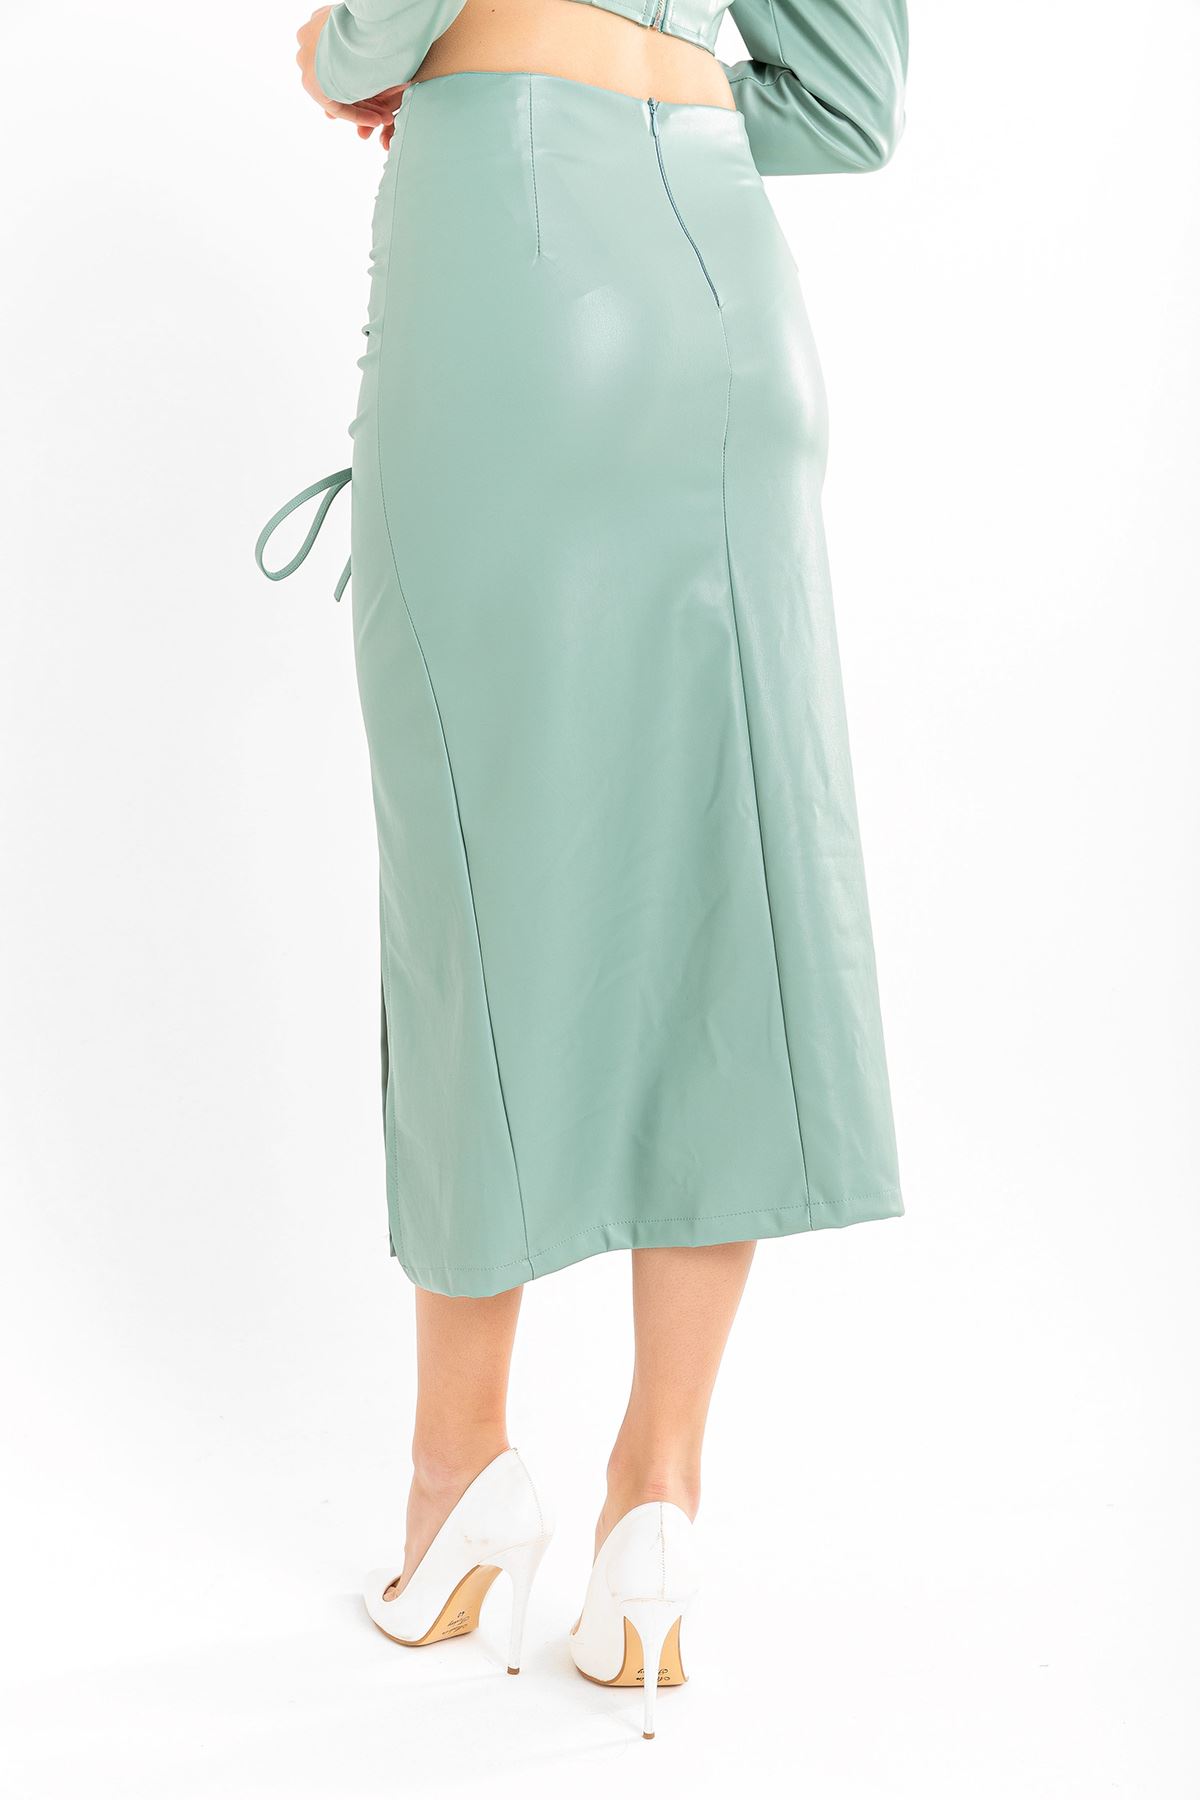 تنورة نسائية قماش جلد تحت الركبتين - اخضر فاتح